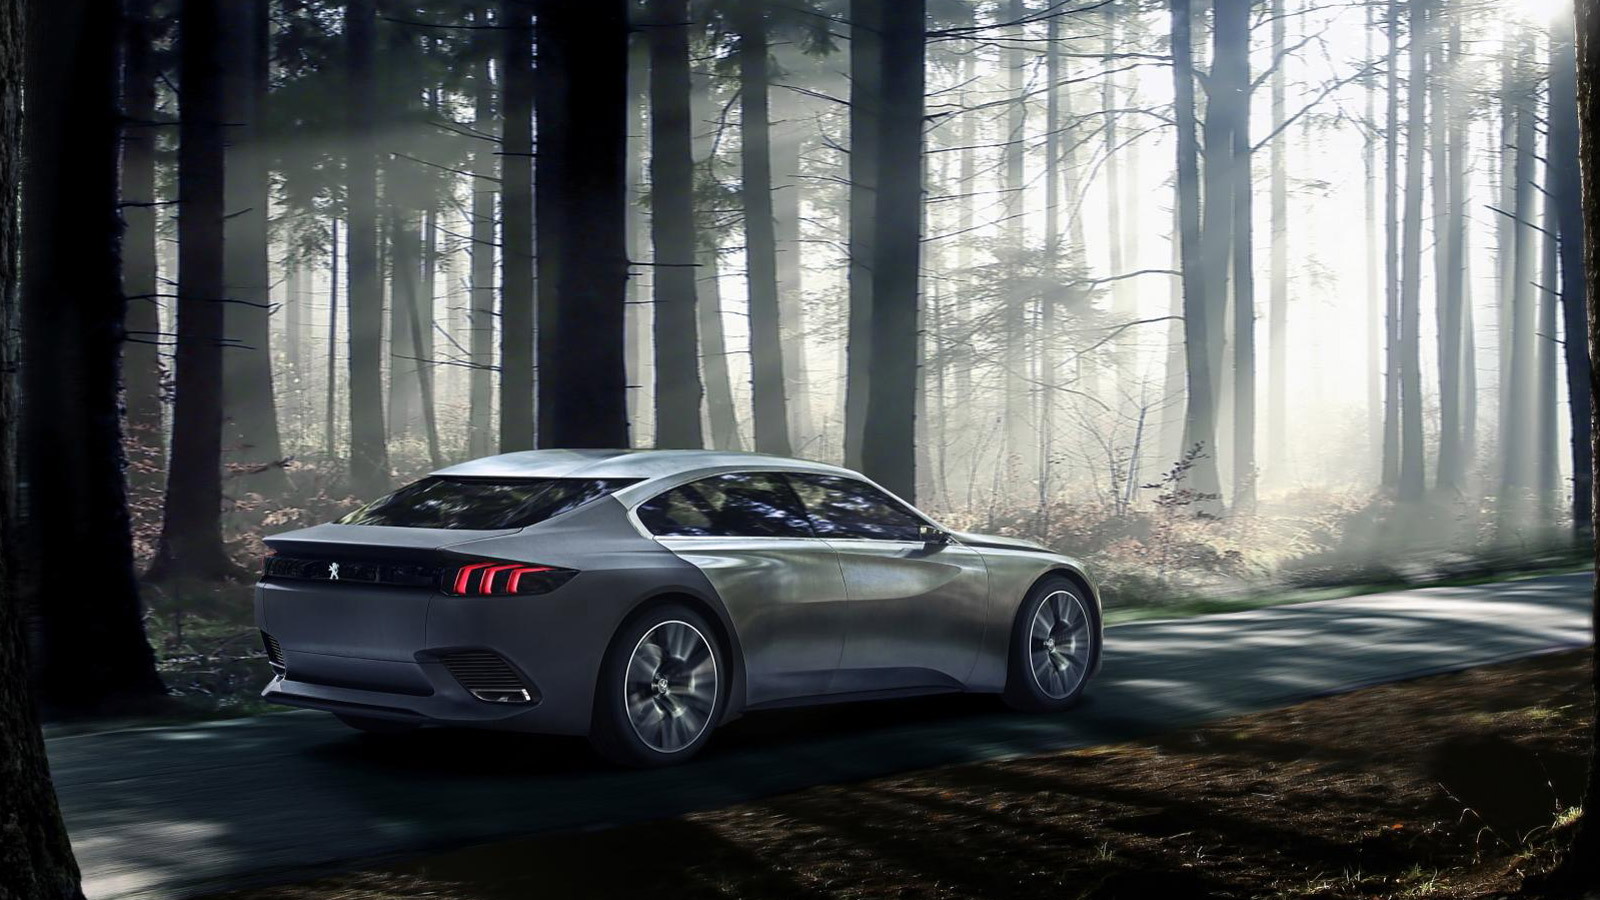 Peugeot Exalt concept, 2014 Paris Auto Show